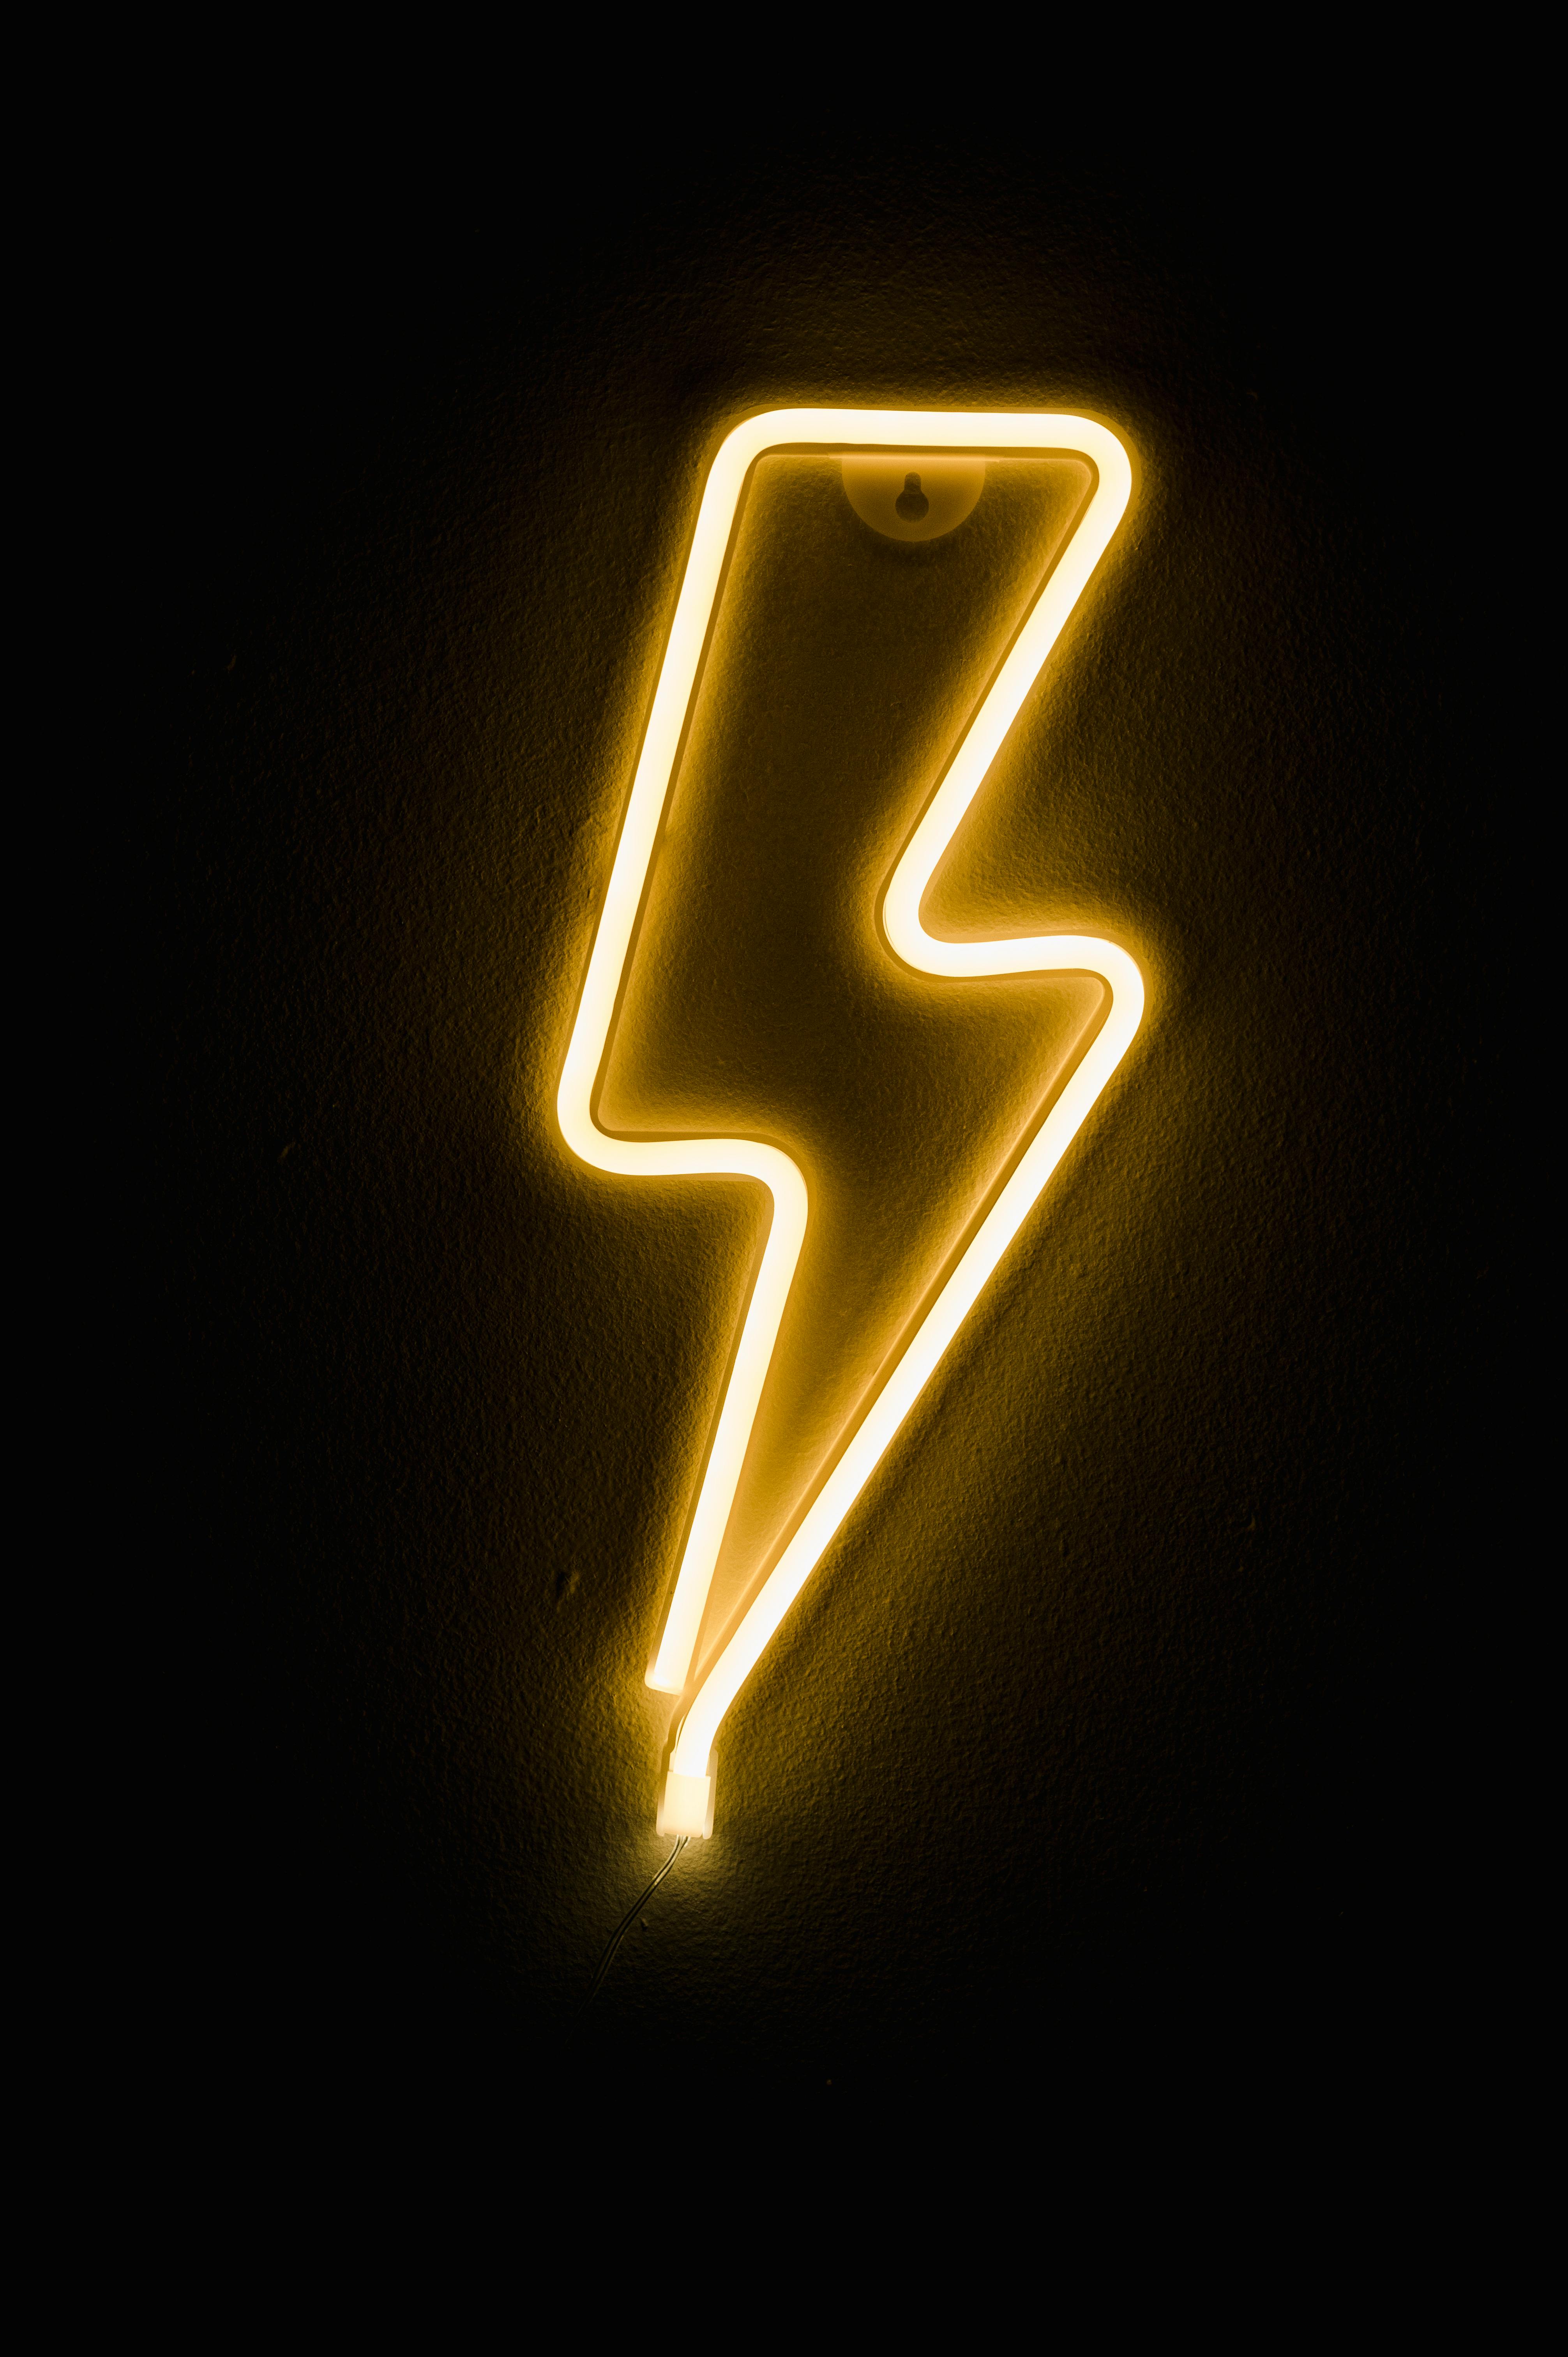 Free download Lightning Bolt Wallpaper V1 0 by tpickdude on 1920x1080 for  your Desktop Mobile  Tablet  Explore 72 Lightning Bolt Wallpaper  Lightning  Backgrounds Lightning Bolt Backgrounds Usain Bolt Wallpapers